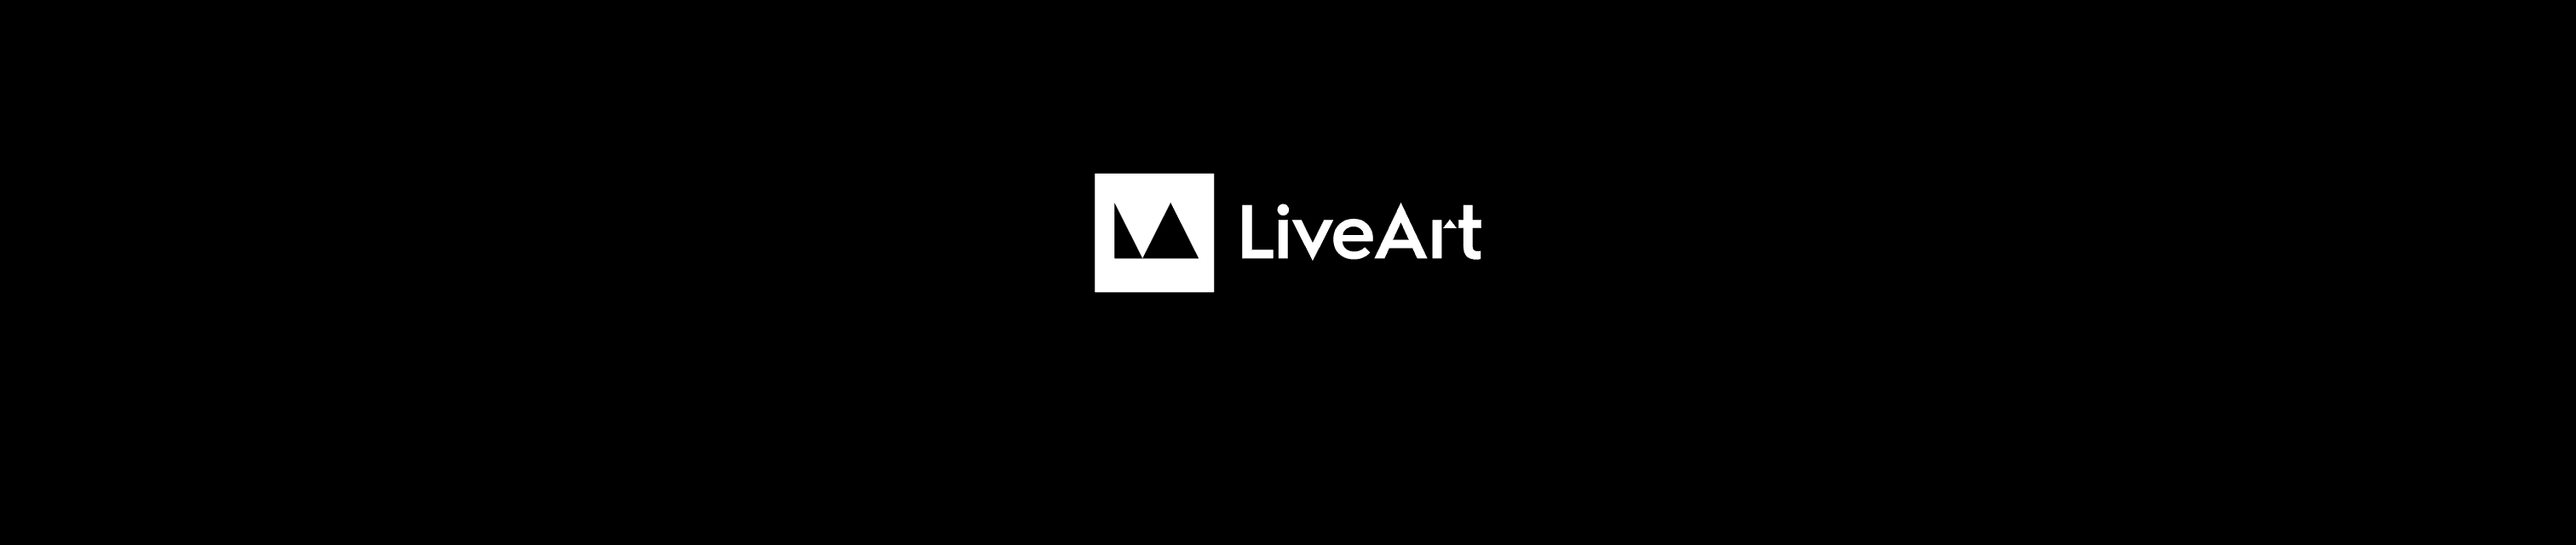 LiveArt-NFT banner